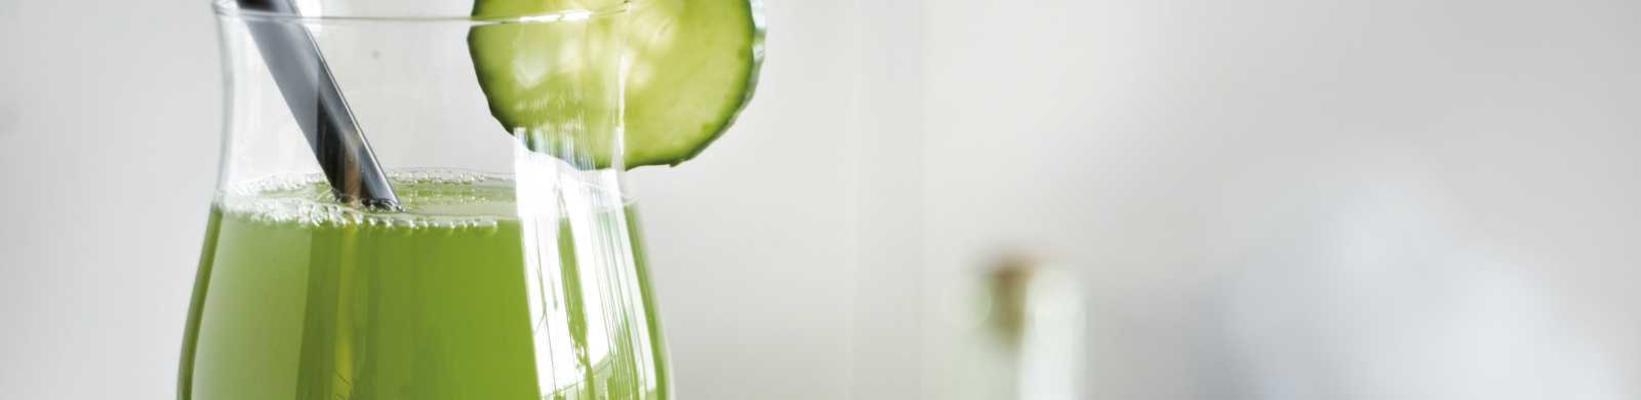 refreshing cucumber-lemon drink